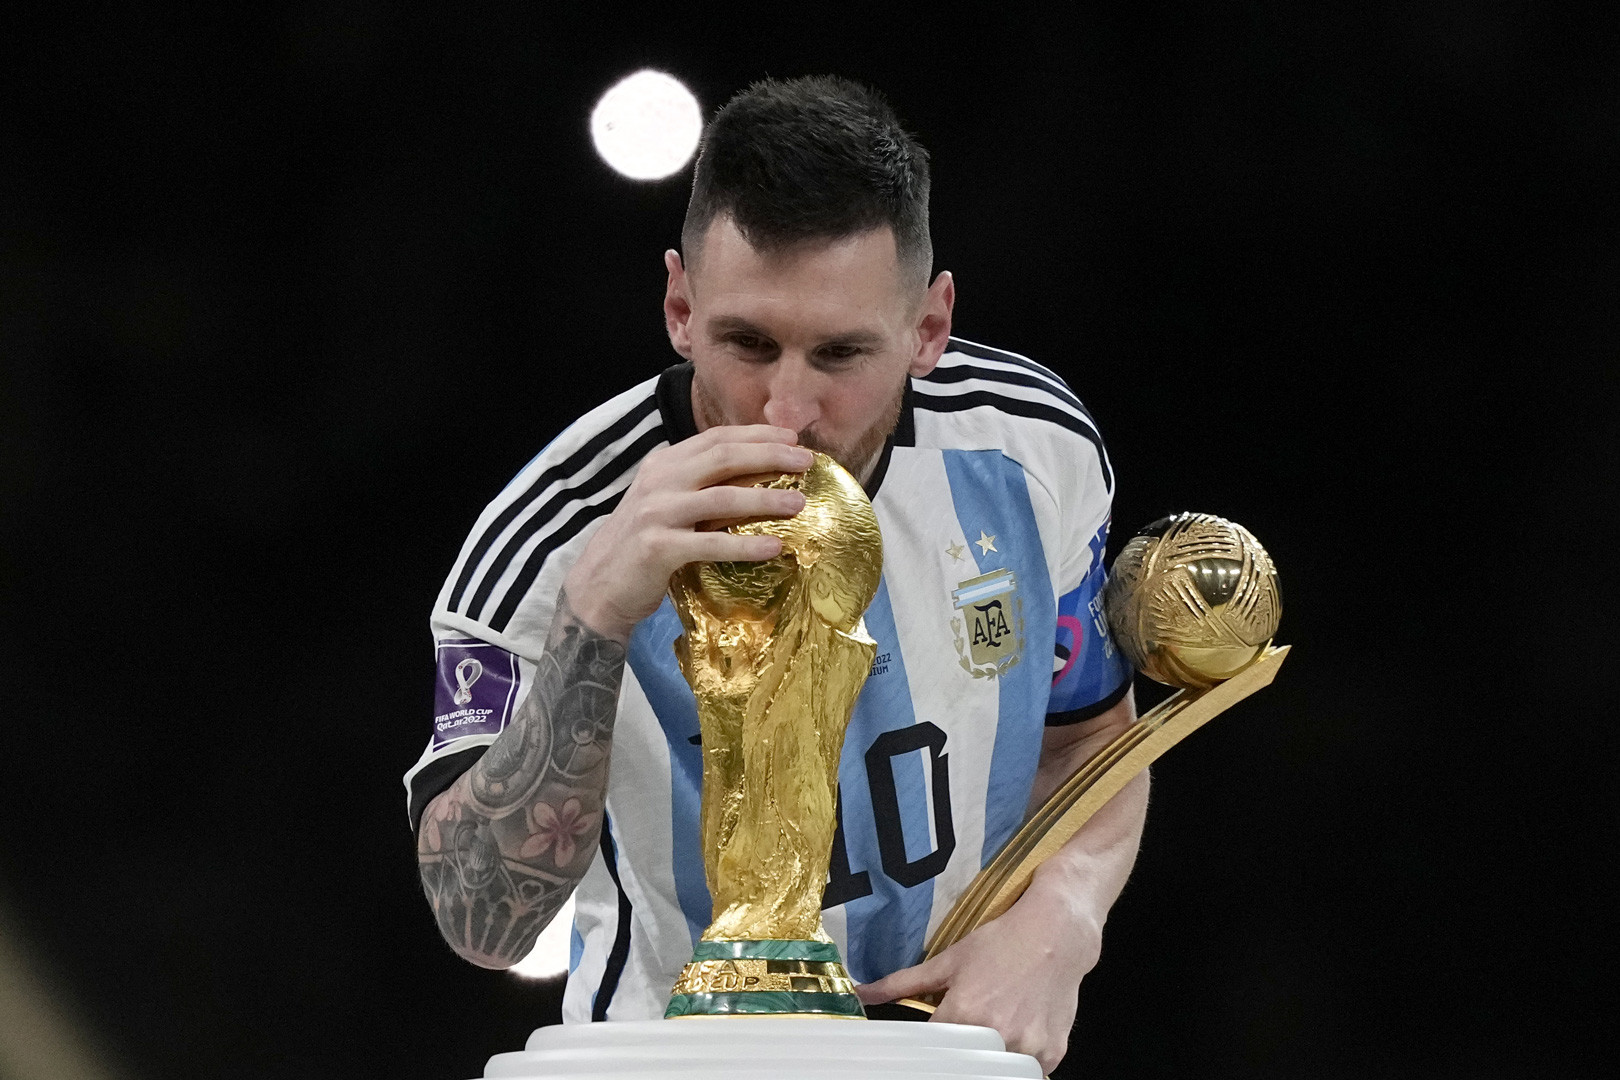 Xem hình ảnh này để hiểu rõ hơn về sức mạnh của đội tuyển Argentina và Messi.